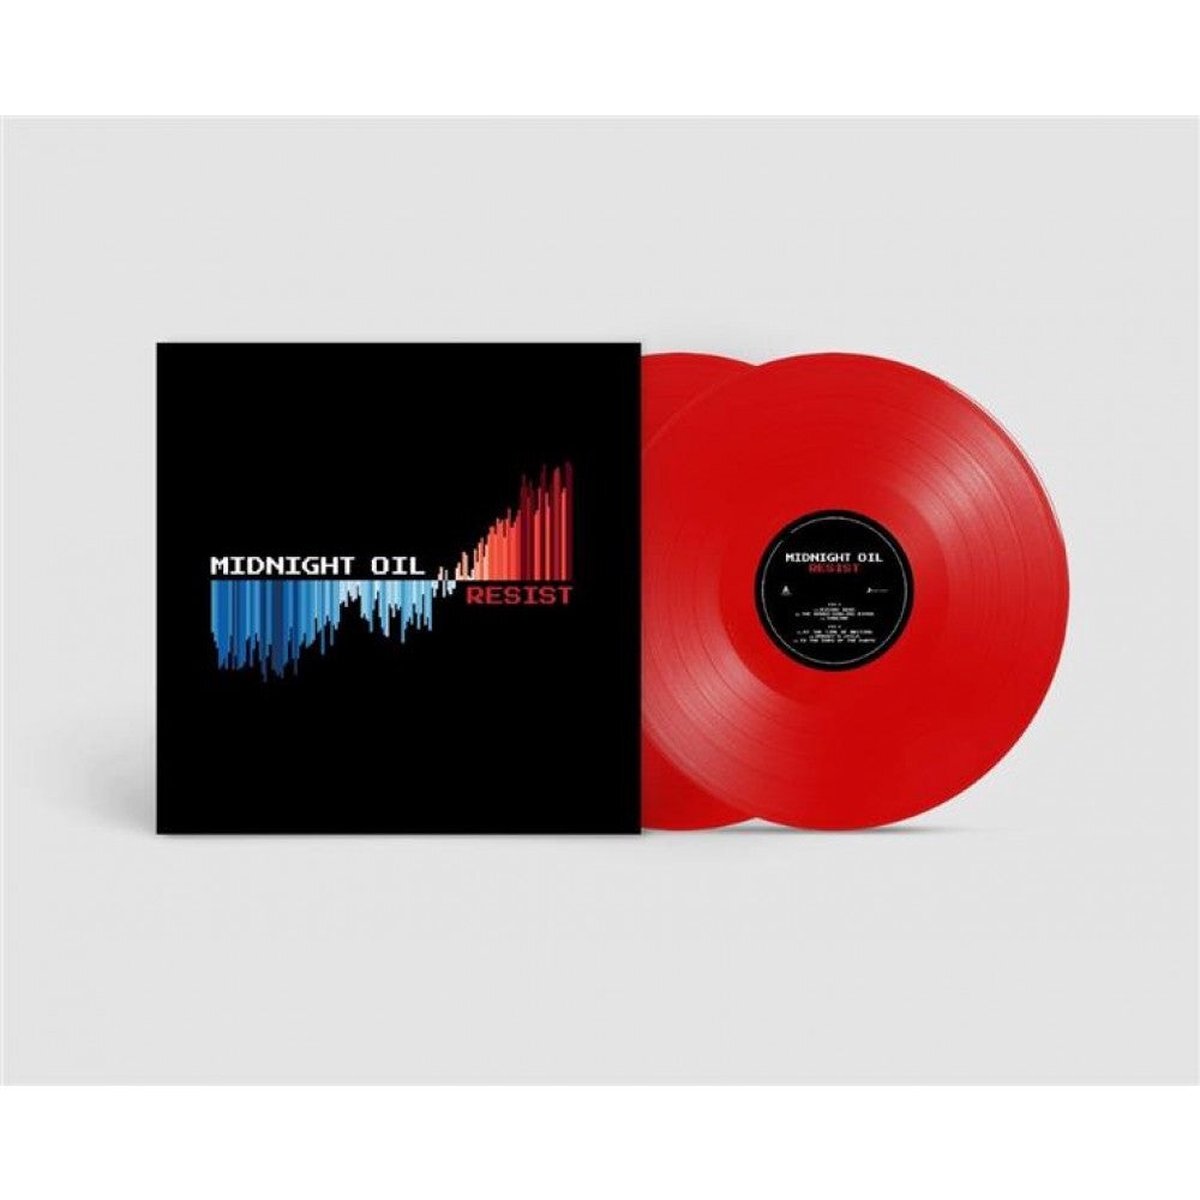 SONY MUSIC Midnight Oil - Resist (Red Vinyl)